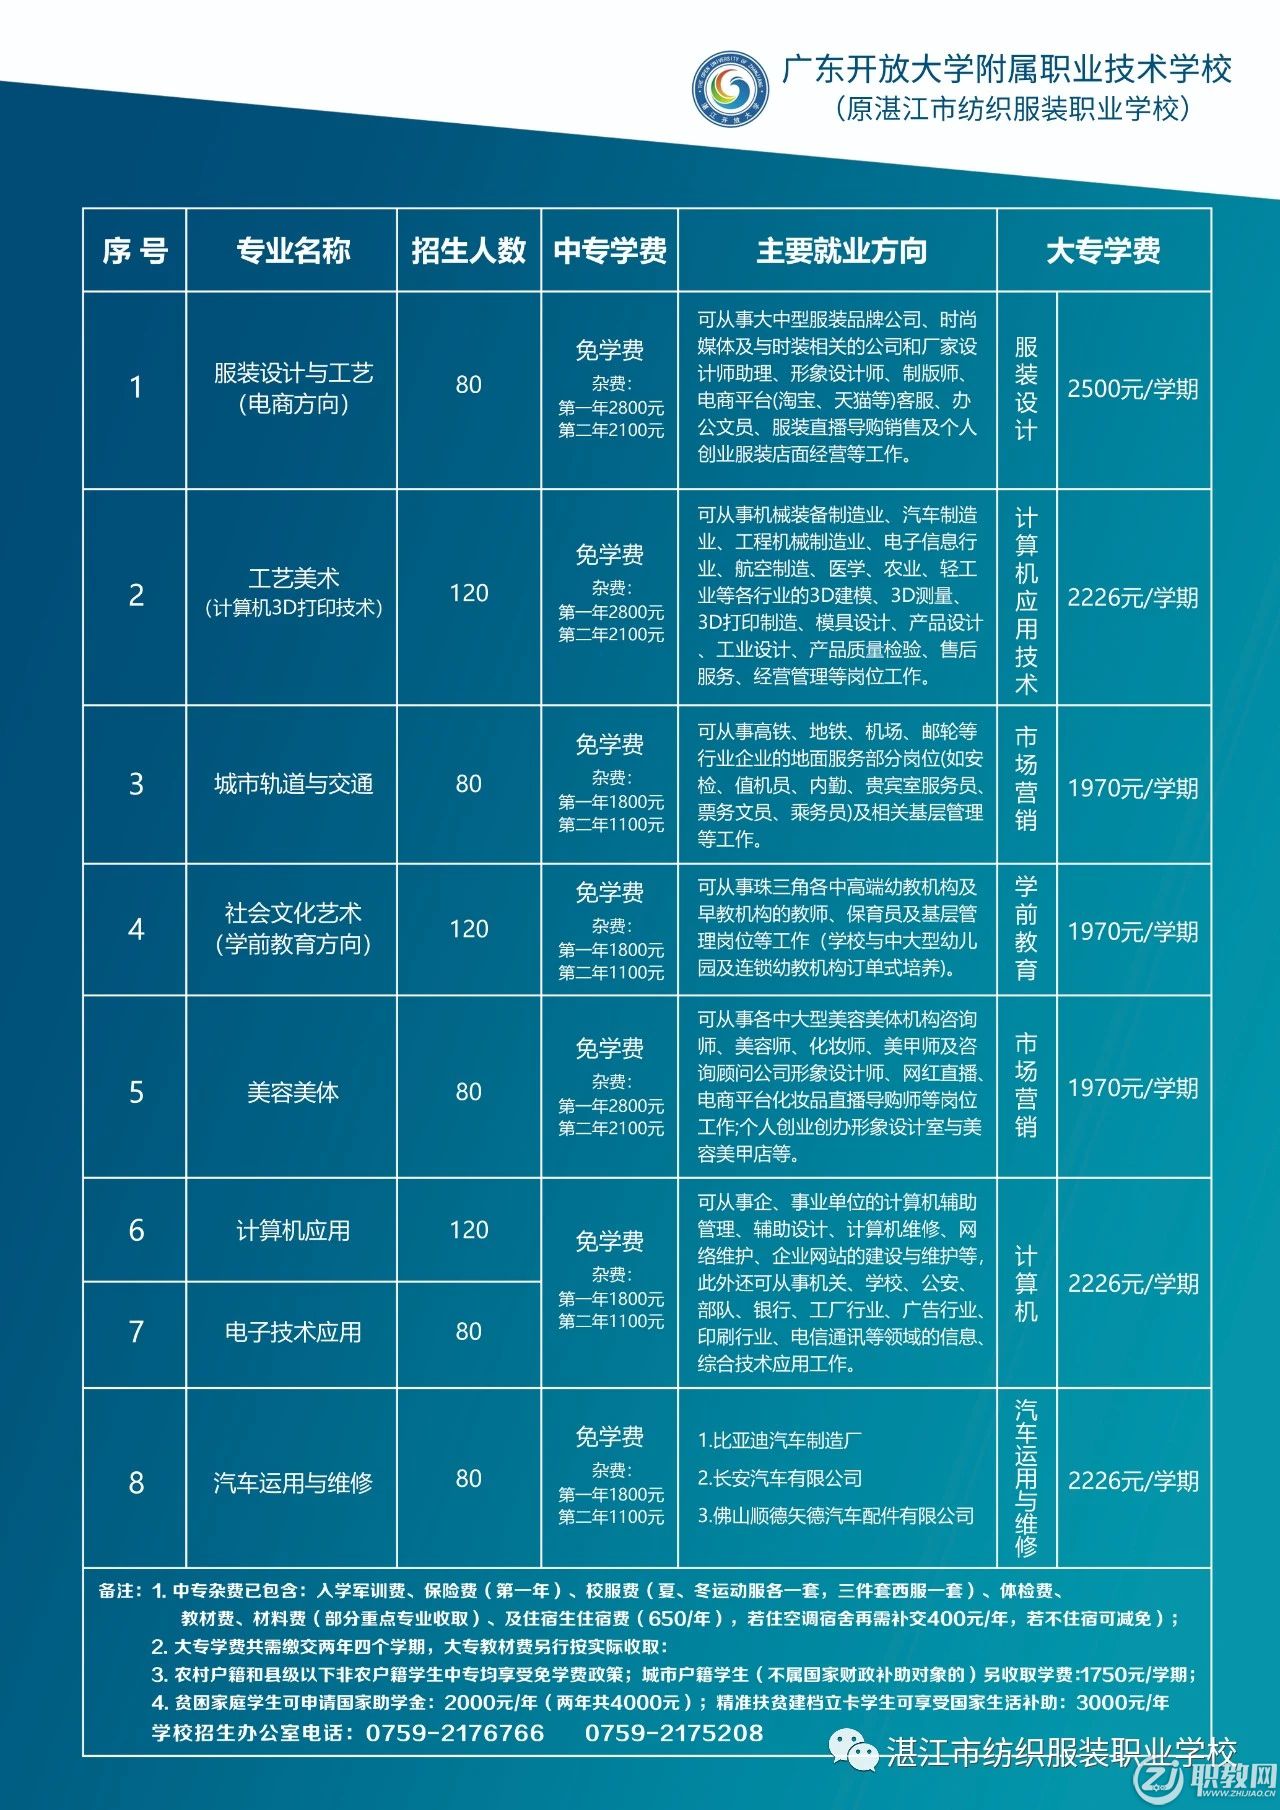 湛江市纺织服装职业学校-2020年招生简章-7.jpg